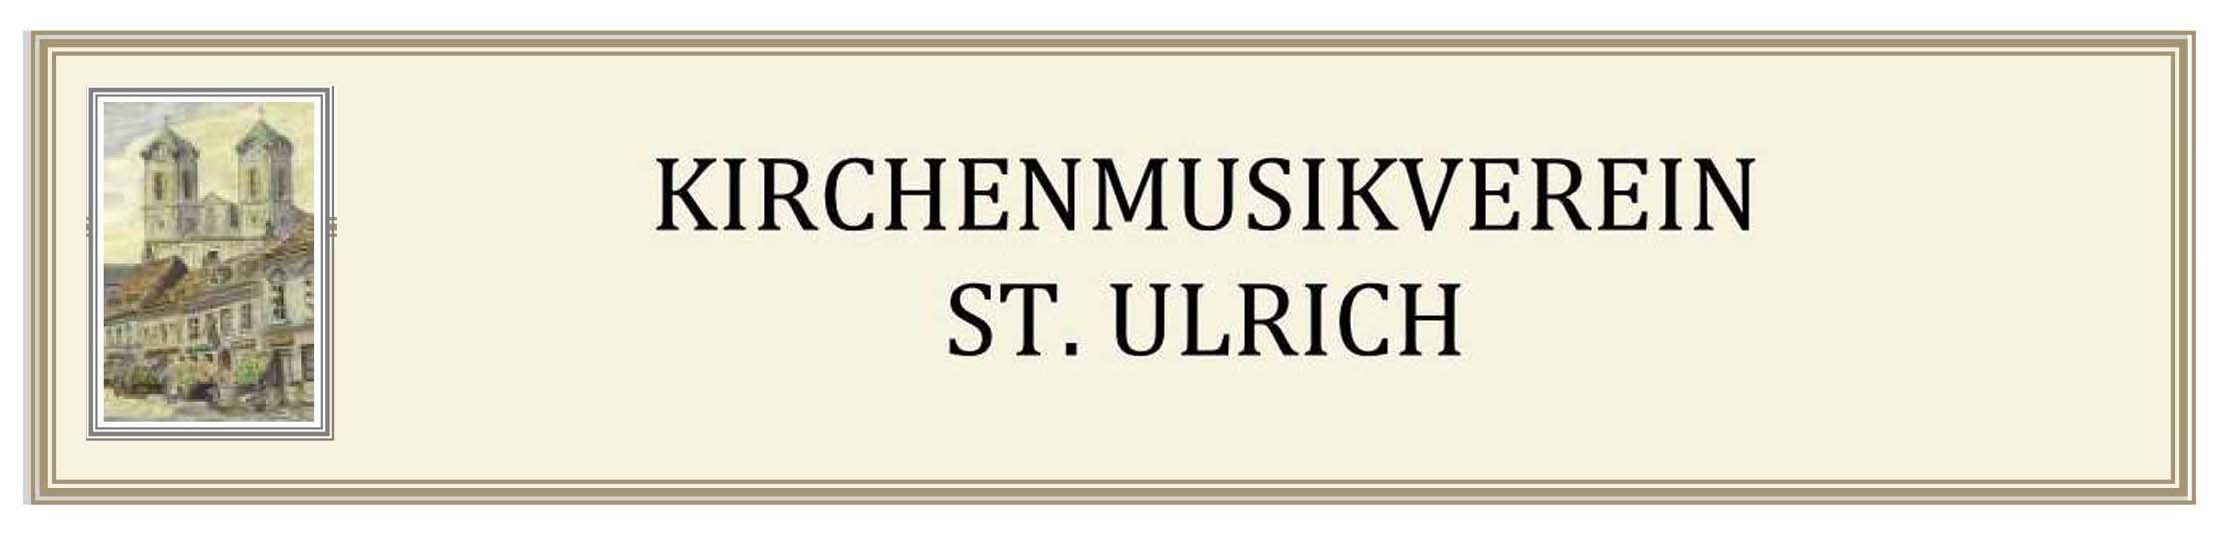 Kirchenmusikverein St. Ulrich